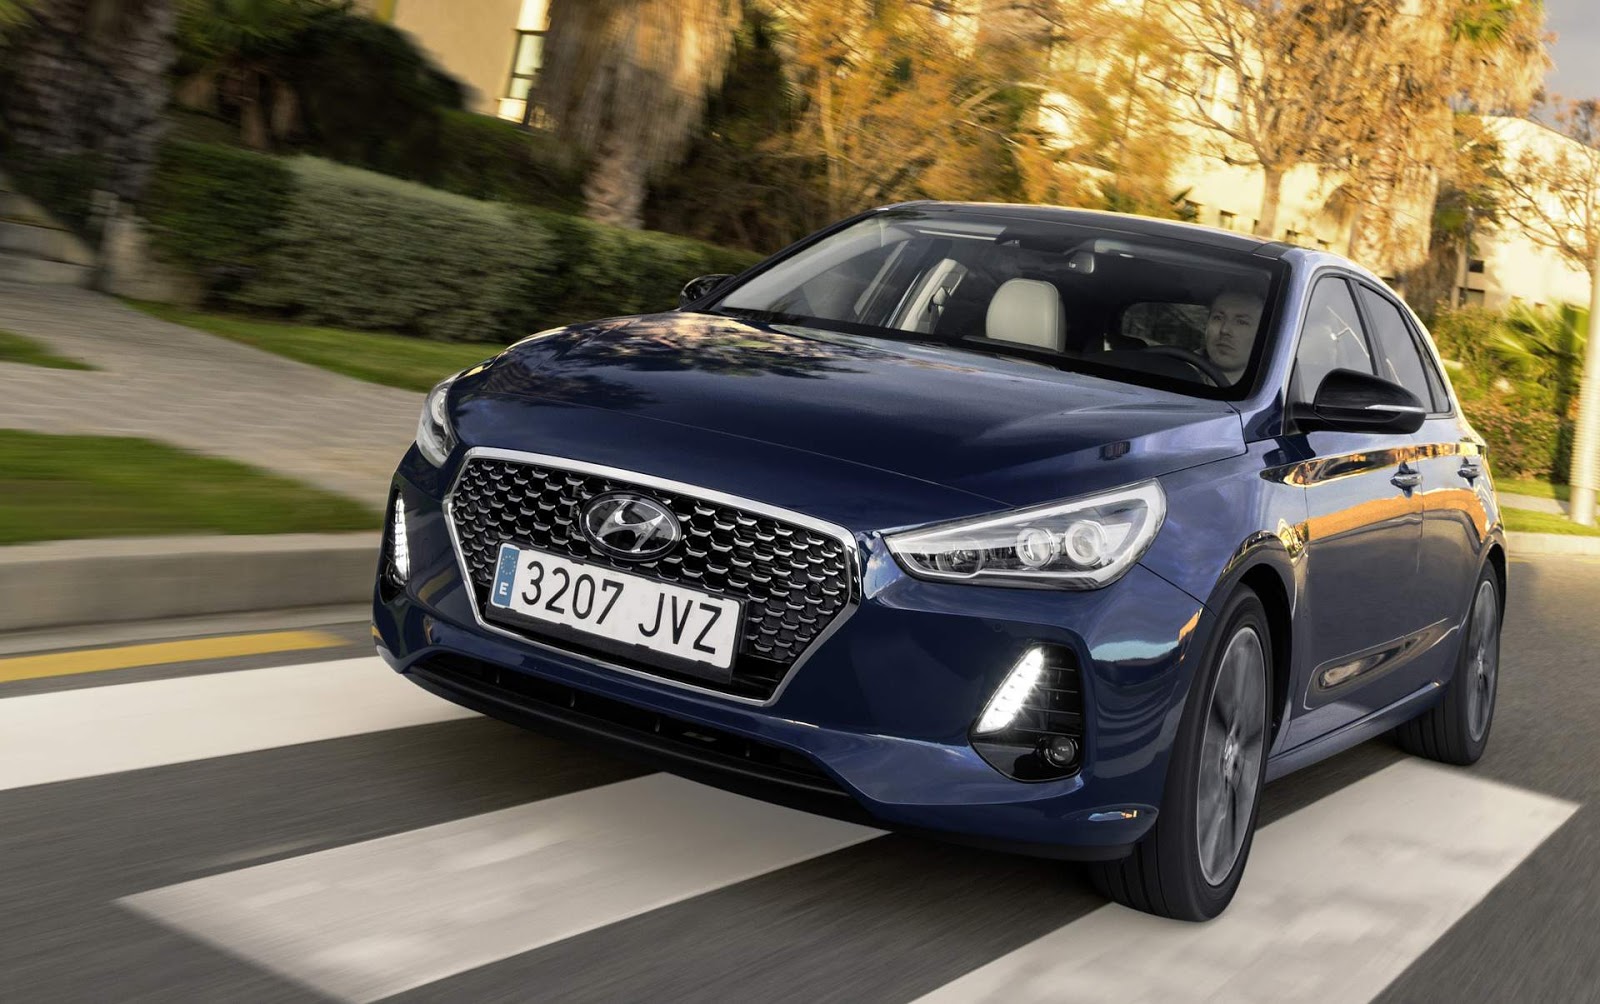 Novo Hyundai i30 2018 lançado oficialmente no mercado europeu